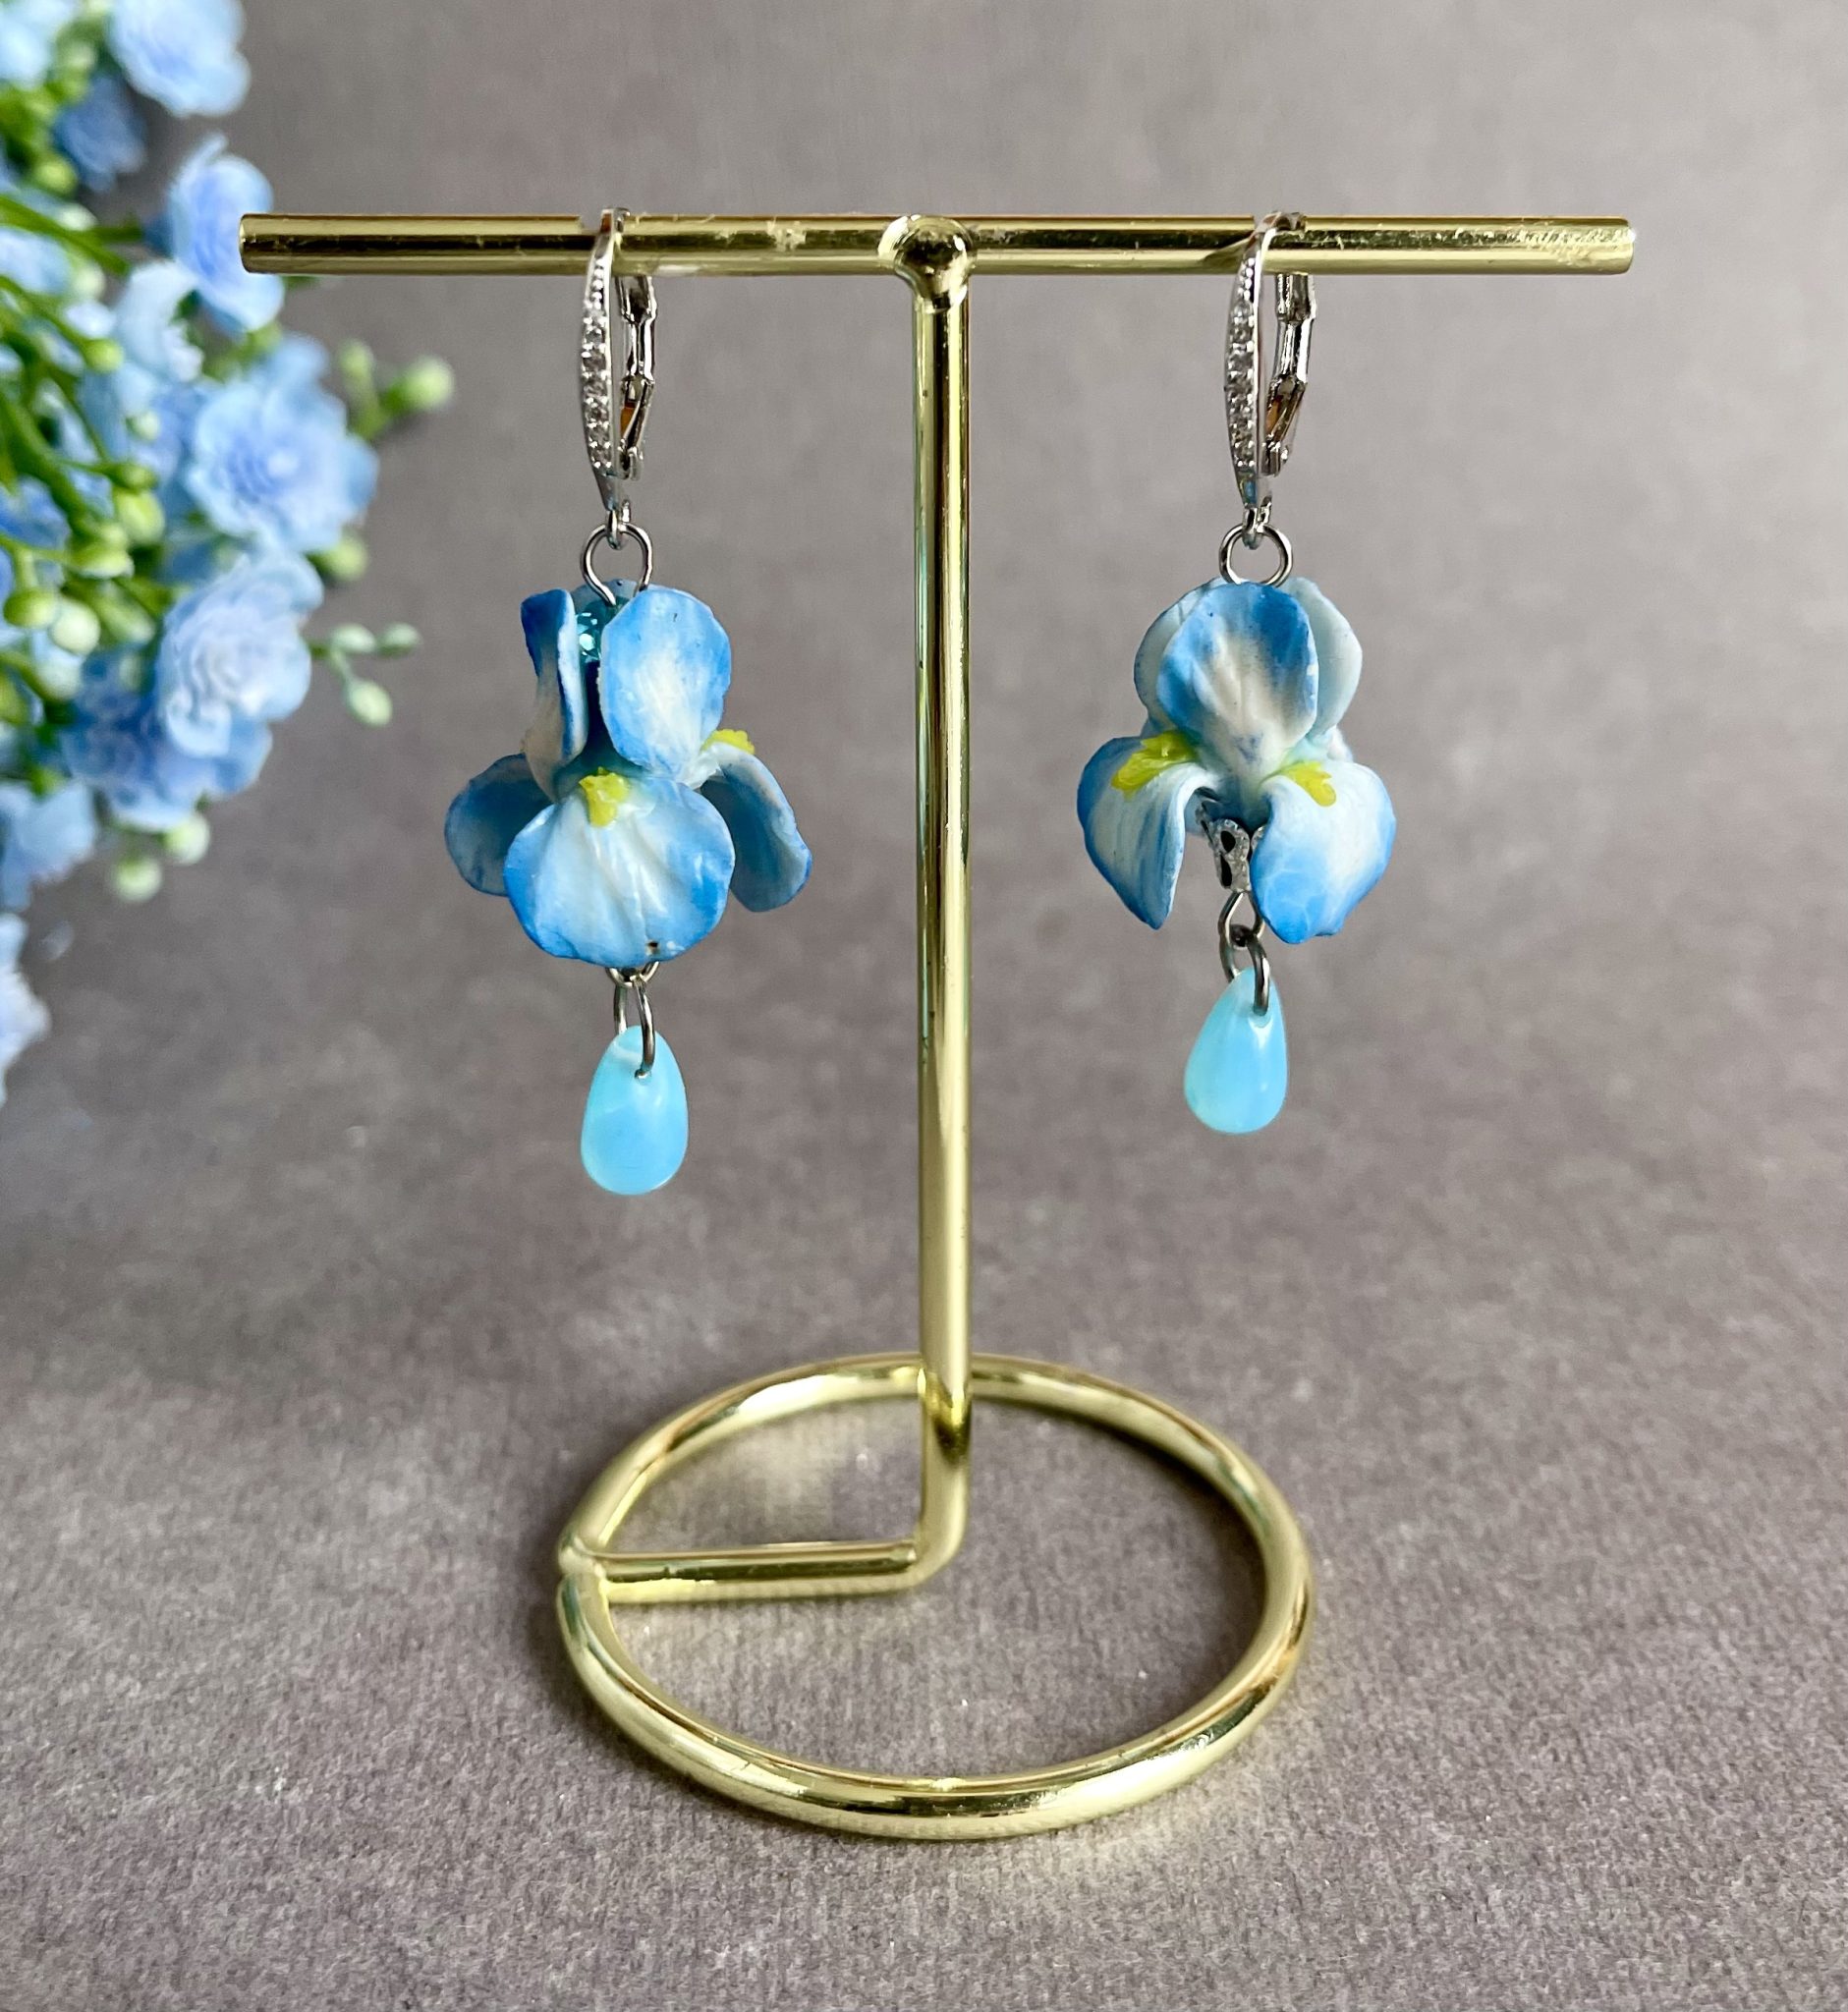 Blue iris flower polymer clay earrings, Flower jewelry, polymer clay earrings, Blue long Dangle earrings, Iris jewelry